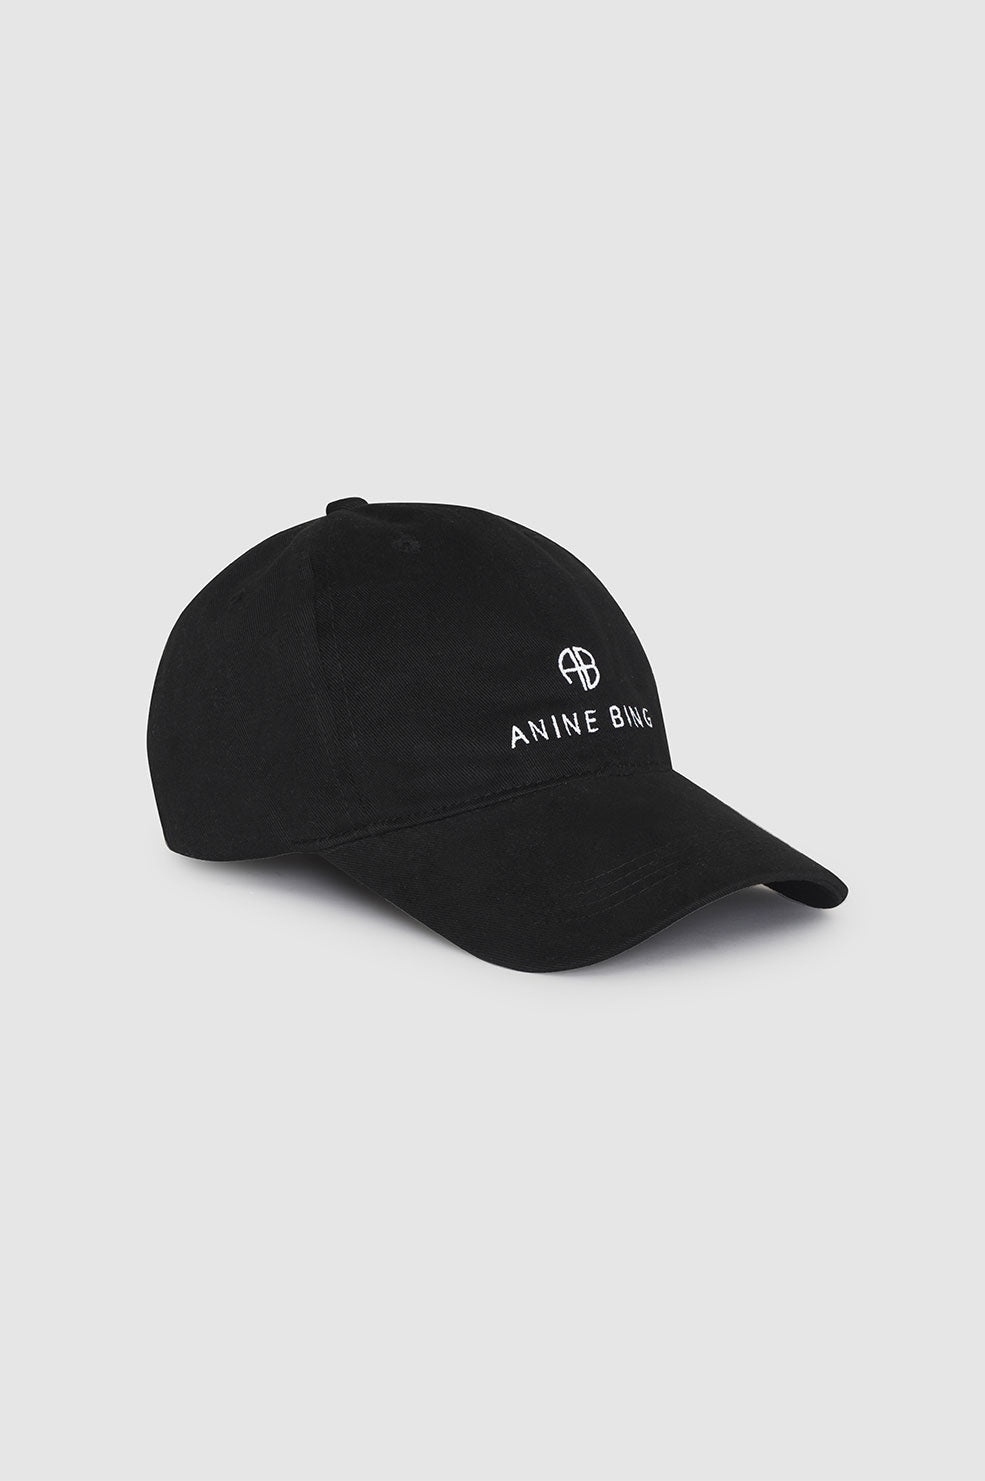 ANINE BING Hats